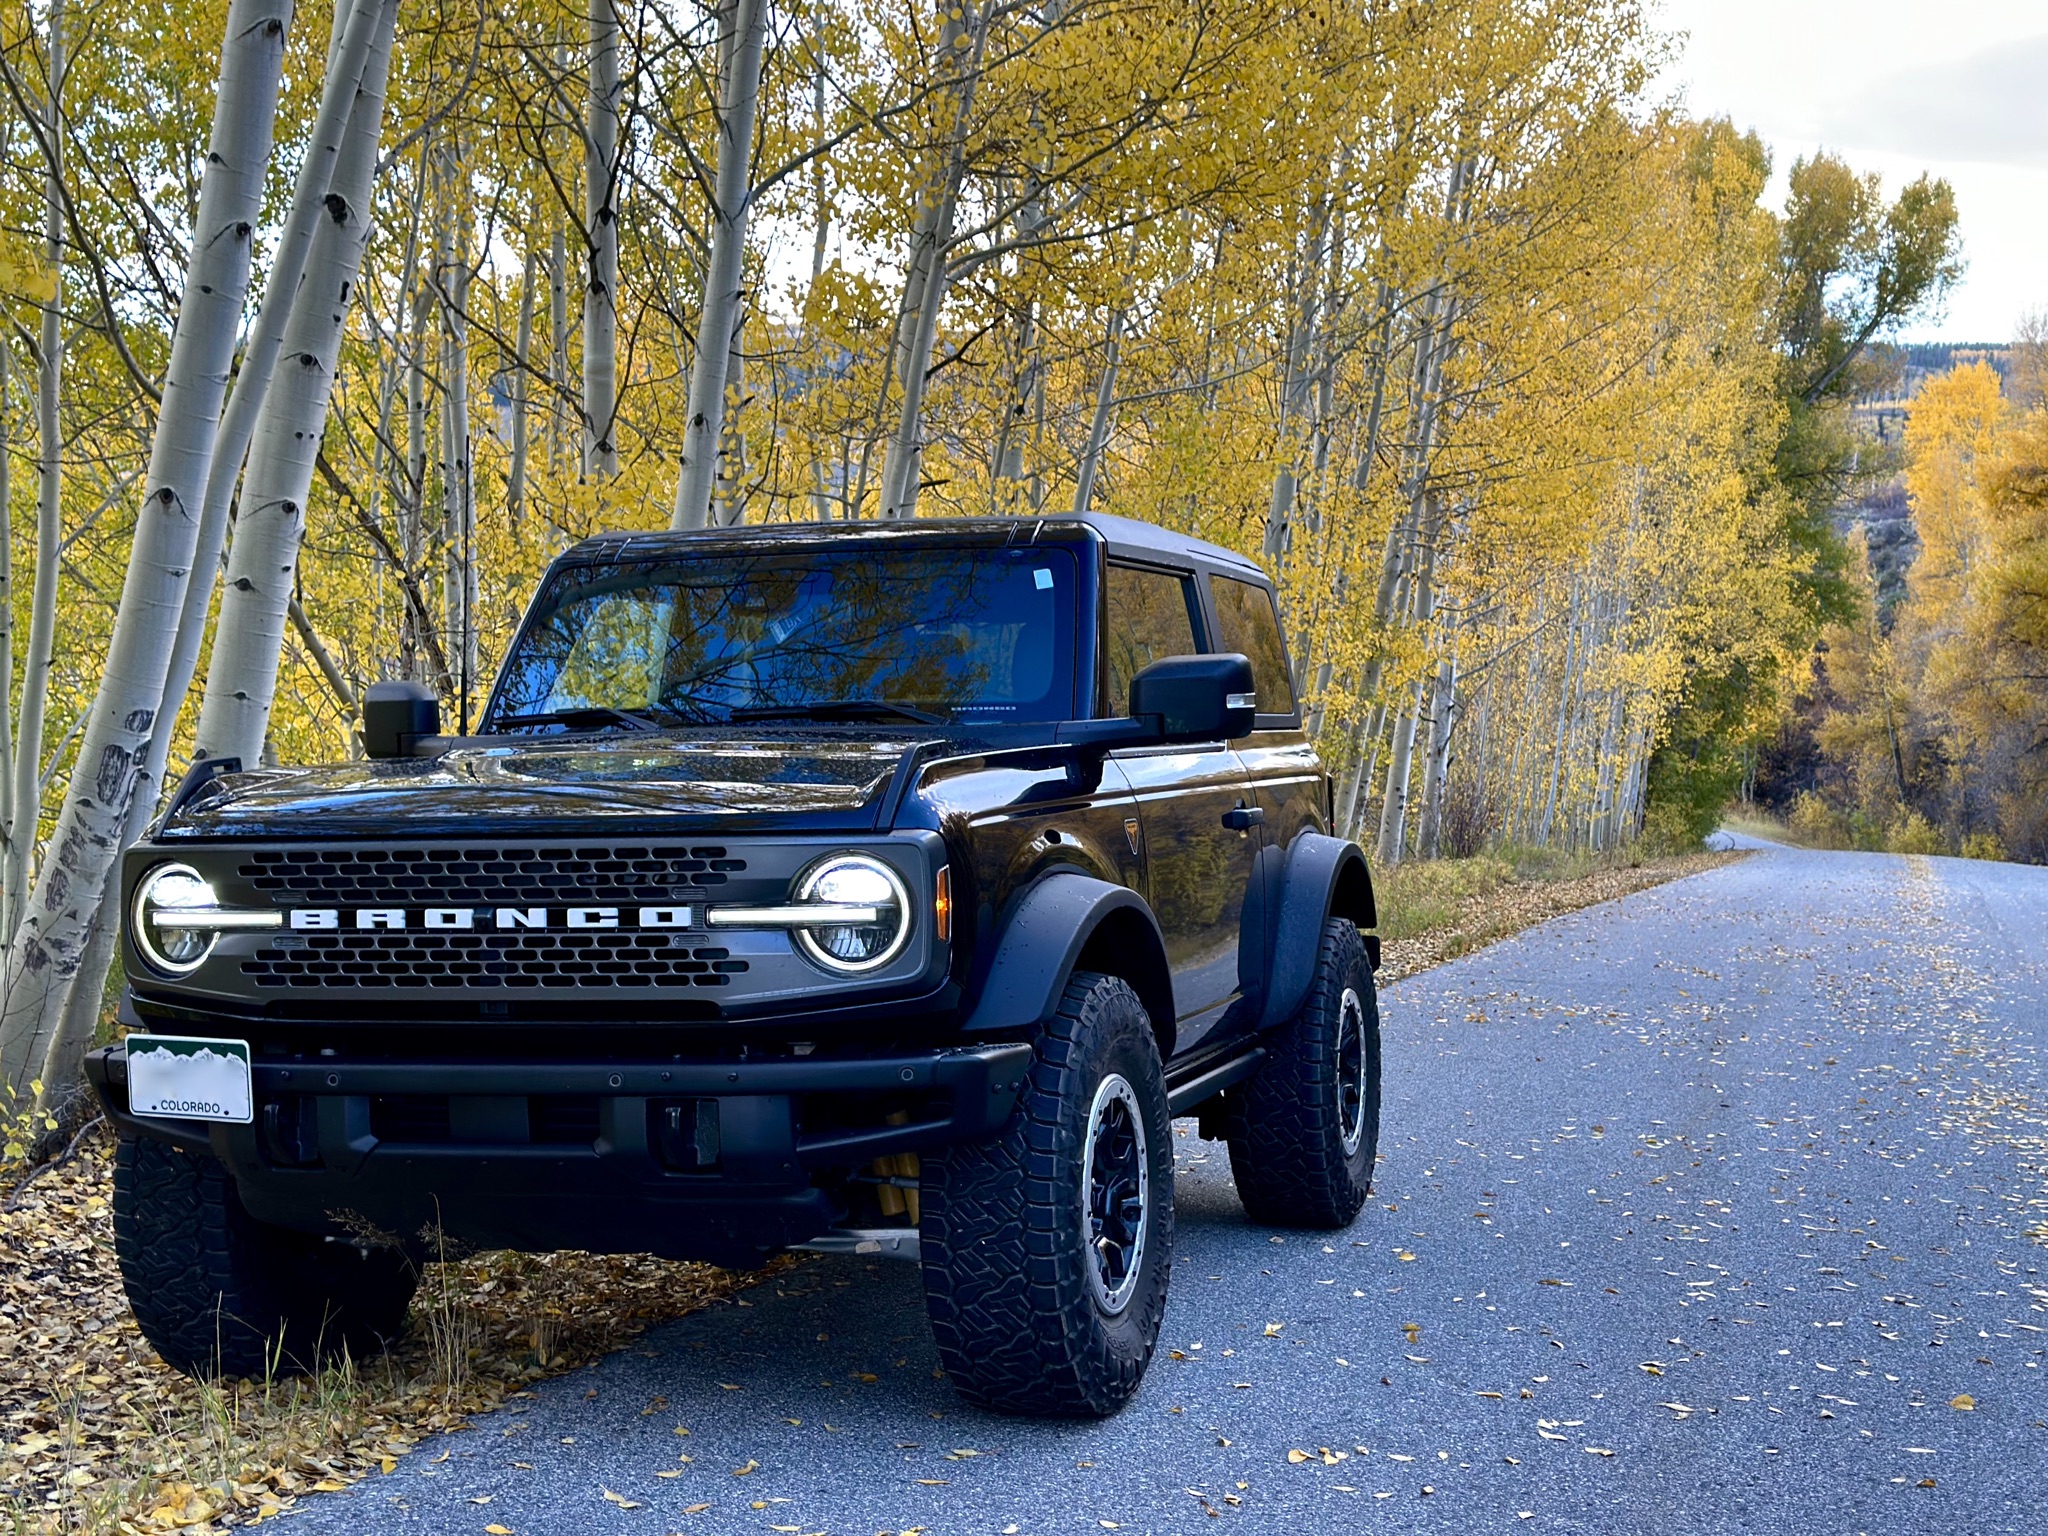 Ford Bronco 🍂 Show me your Fall (Autumn) Photos! I’ll start. A46A31A7-84F7-4442-A56C-1773B5F0E50B